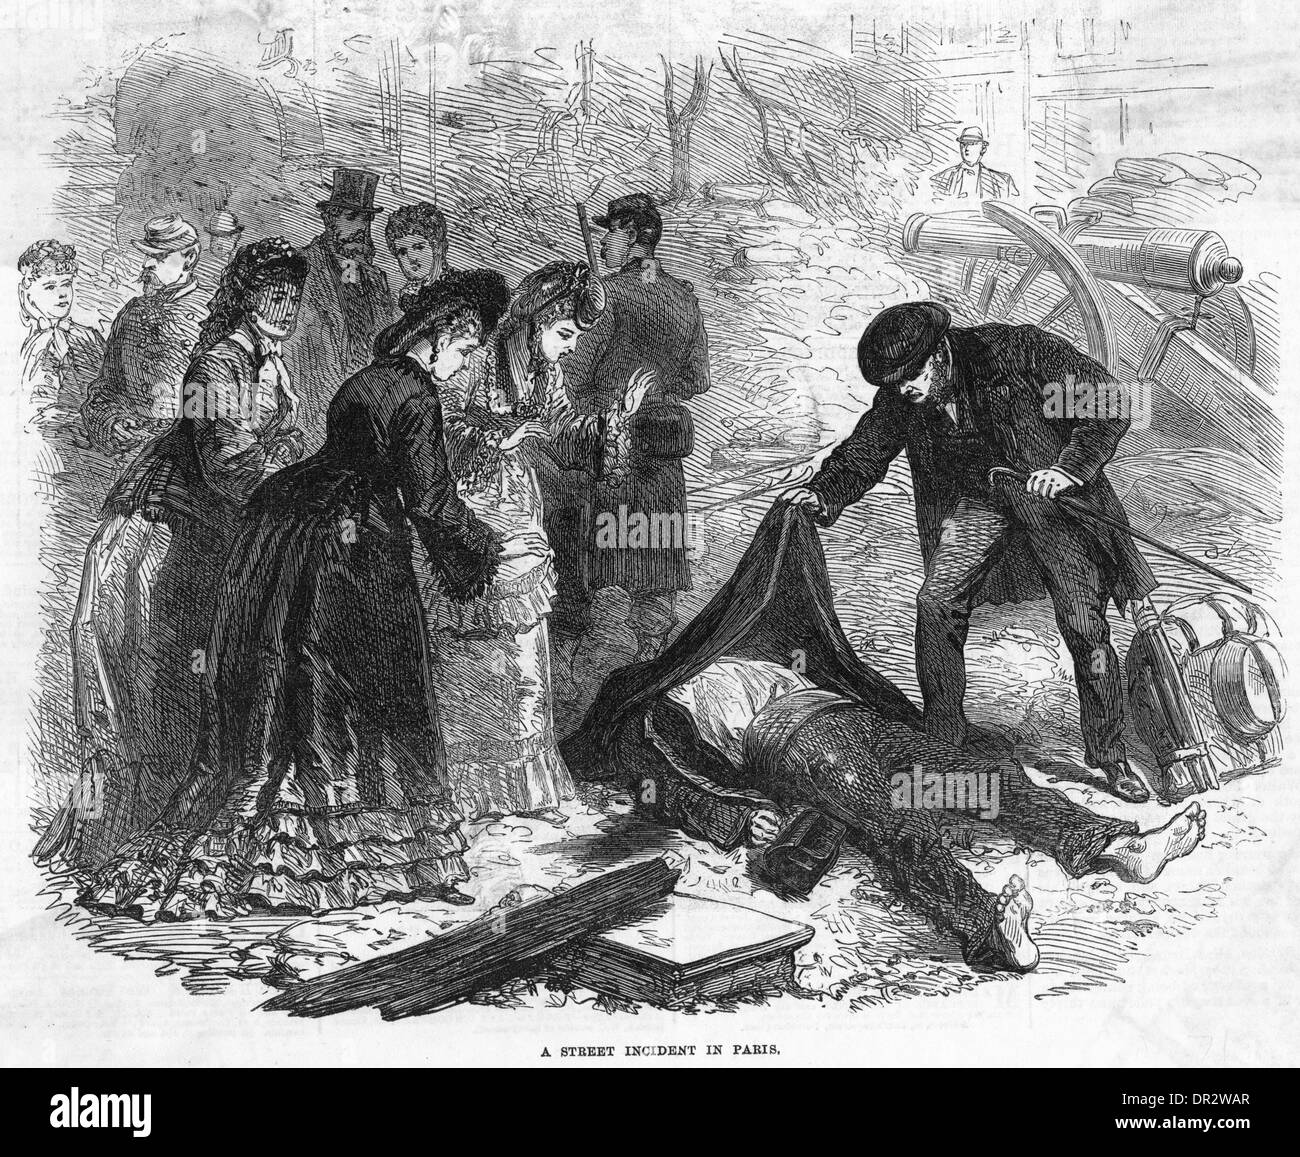 Comuna de París, incidente callejero 1871 Foto de stock